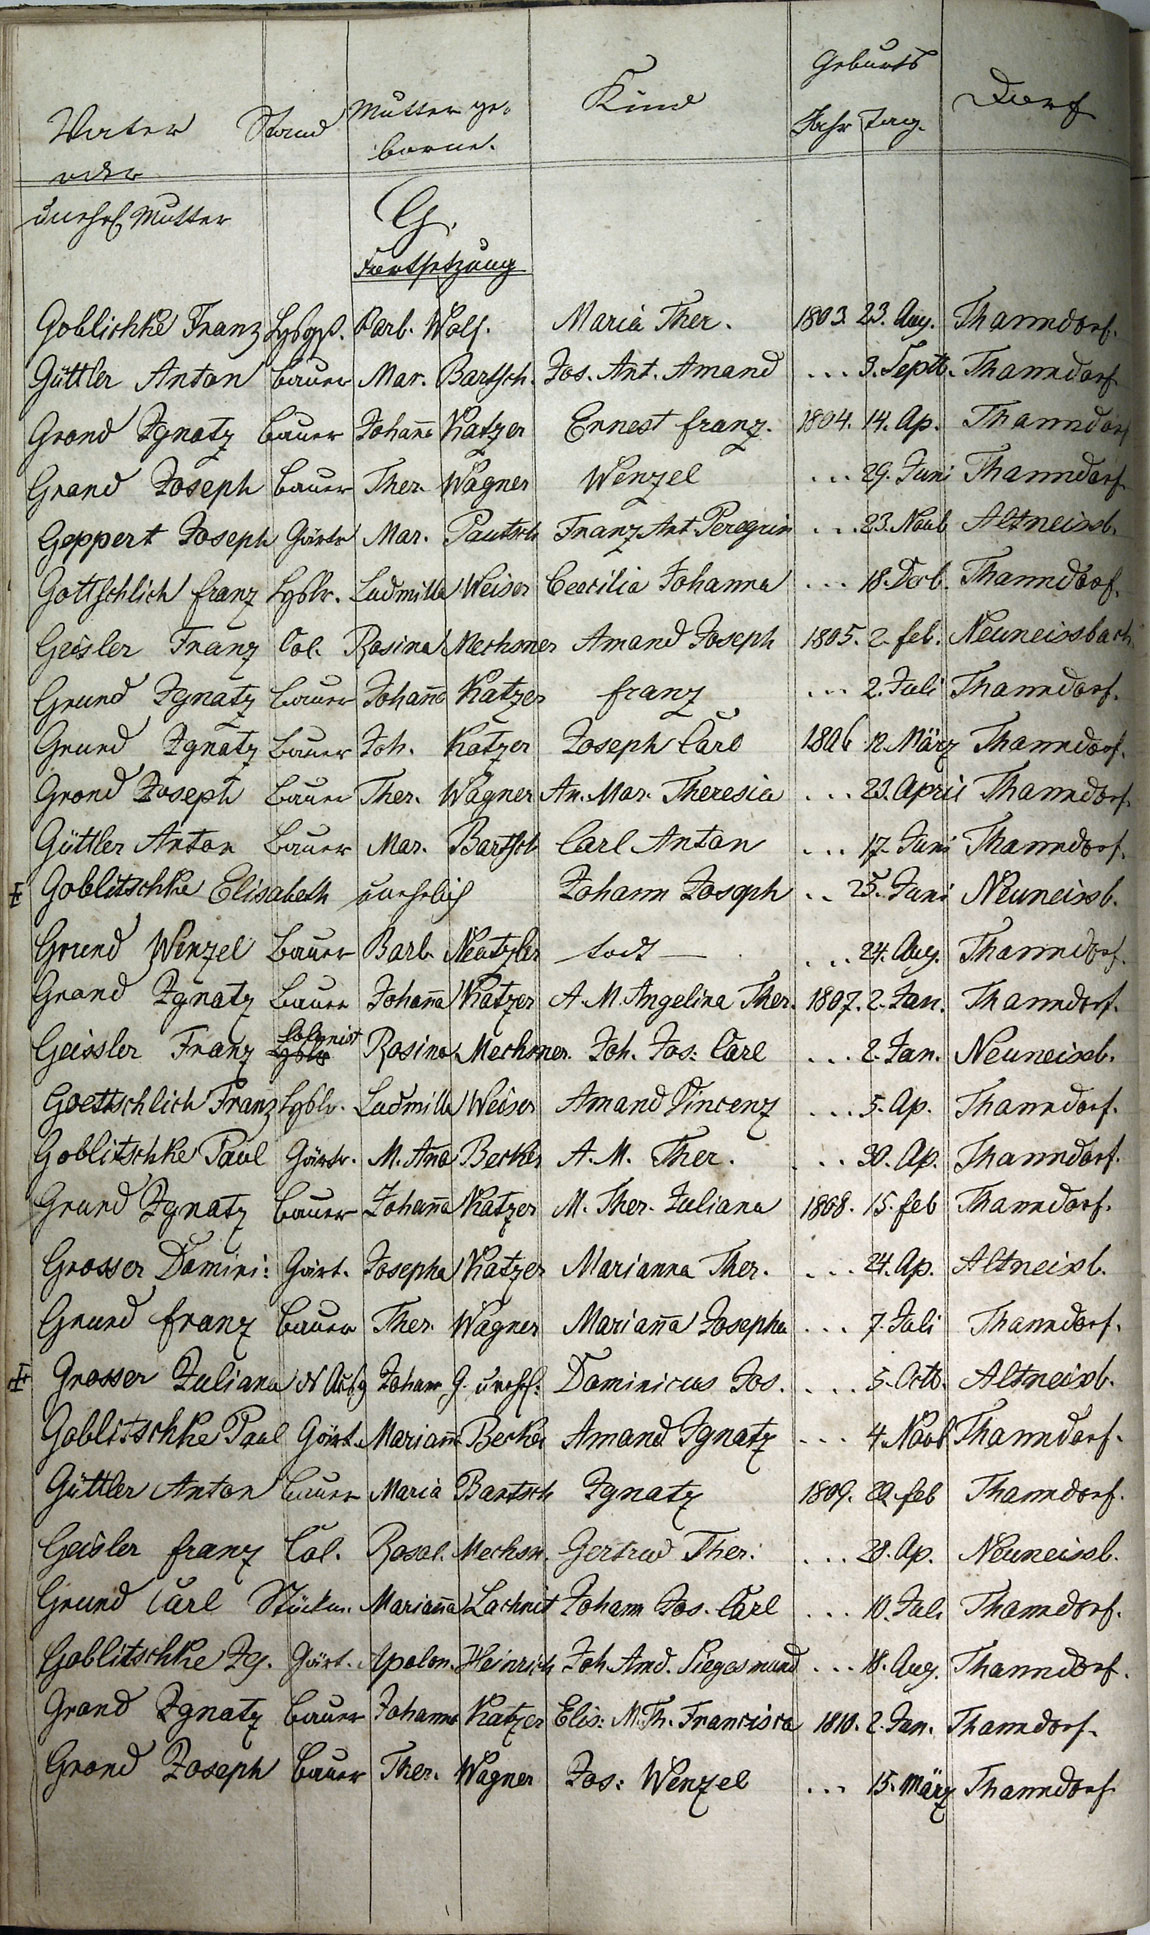 Taufregister 1770 - 1889 Seite 38